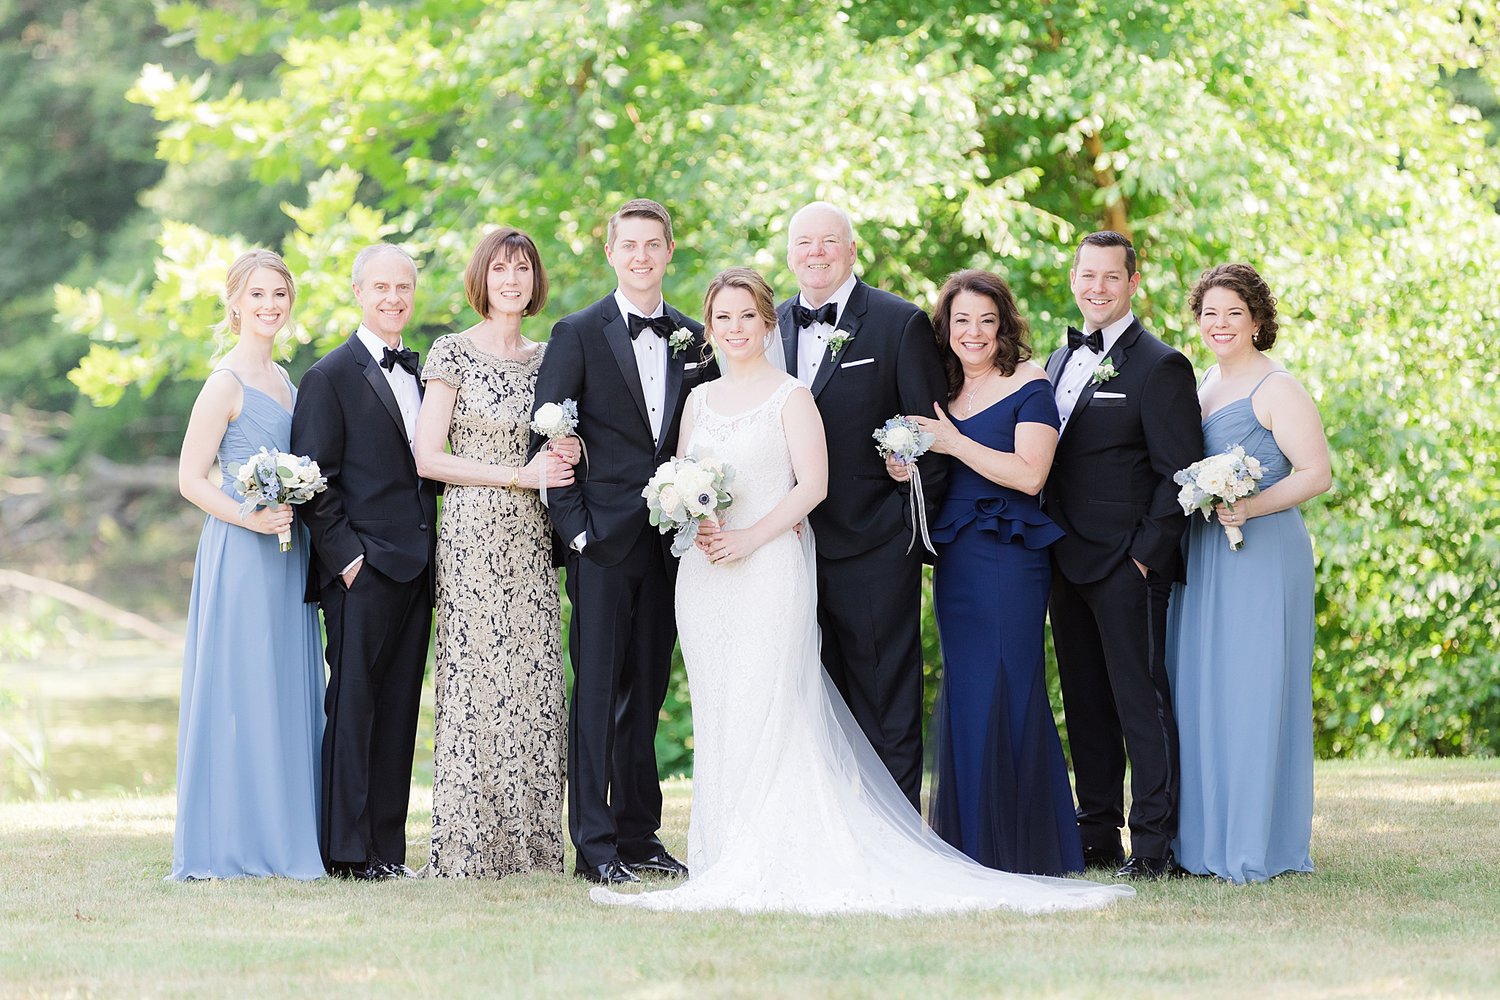 Family wedding. Свадьба и семья. Европейская семья свадьба. Семейные фото со свадьбы. Фото семьи на свадьбе.